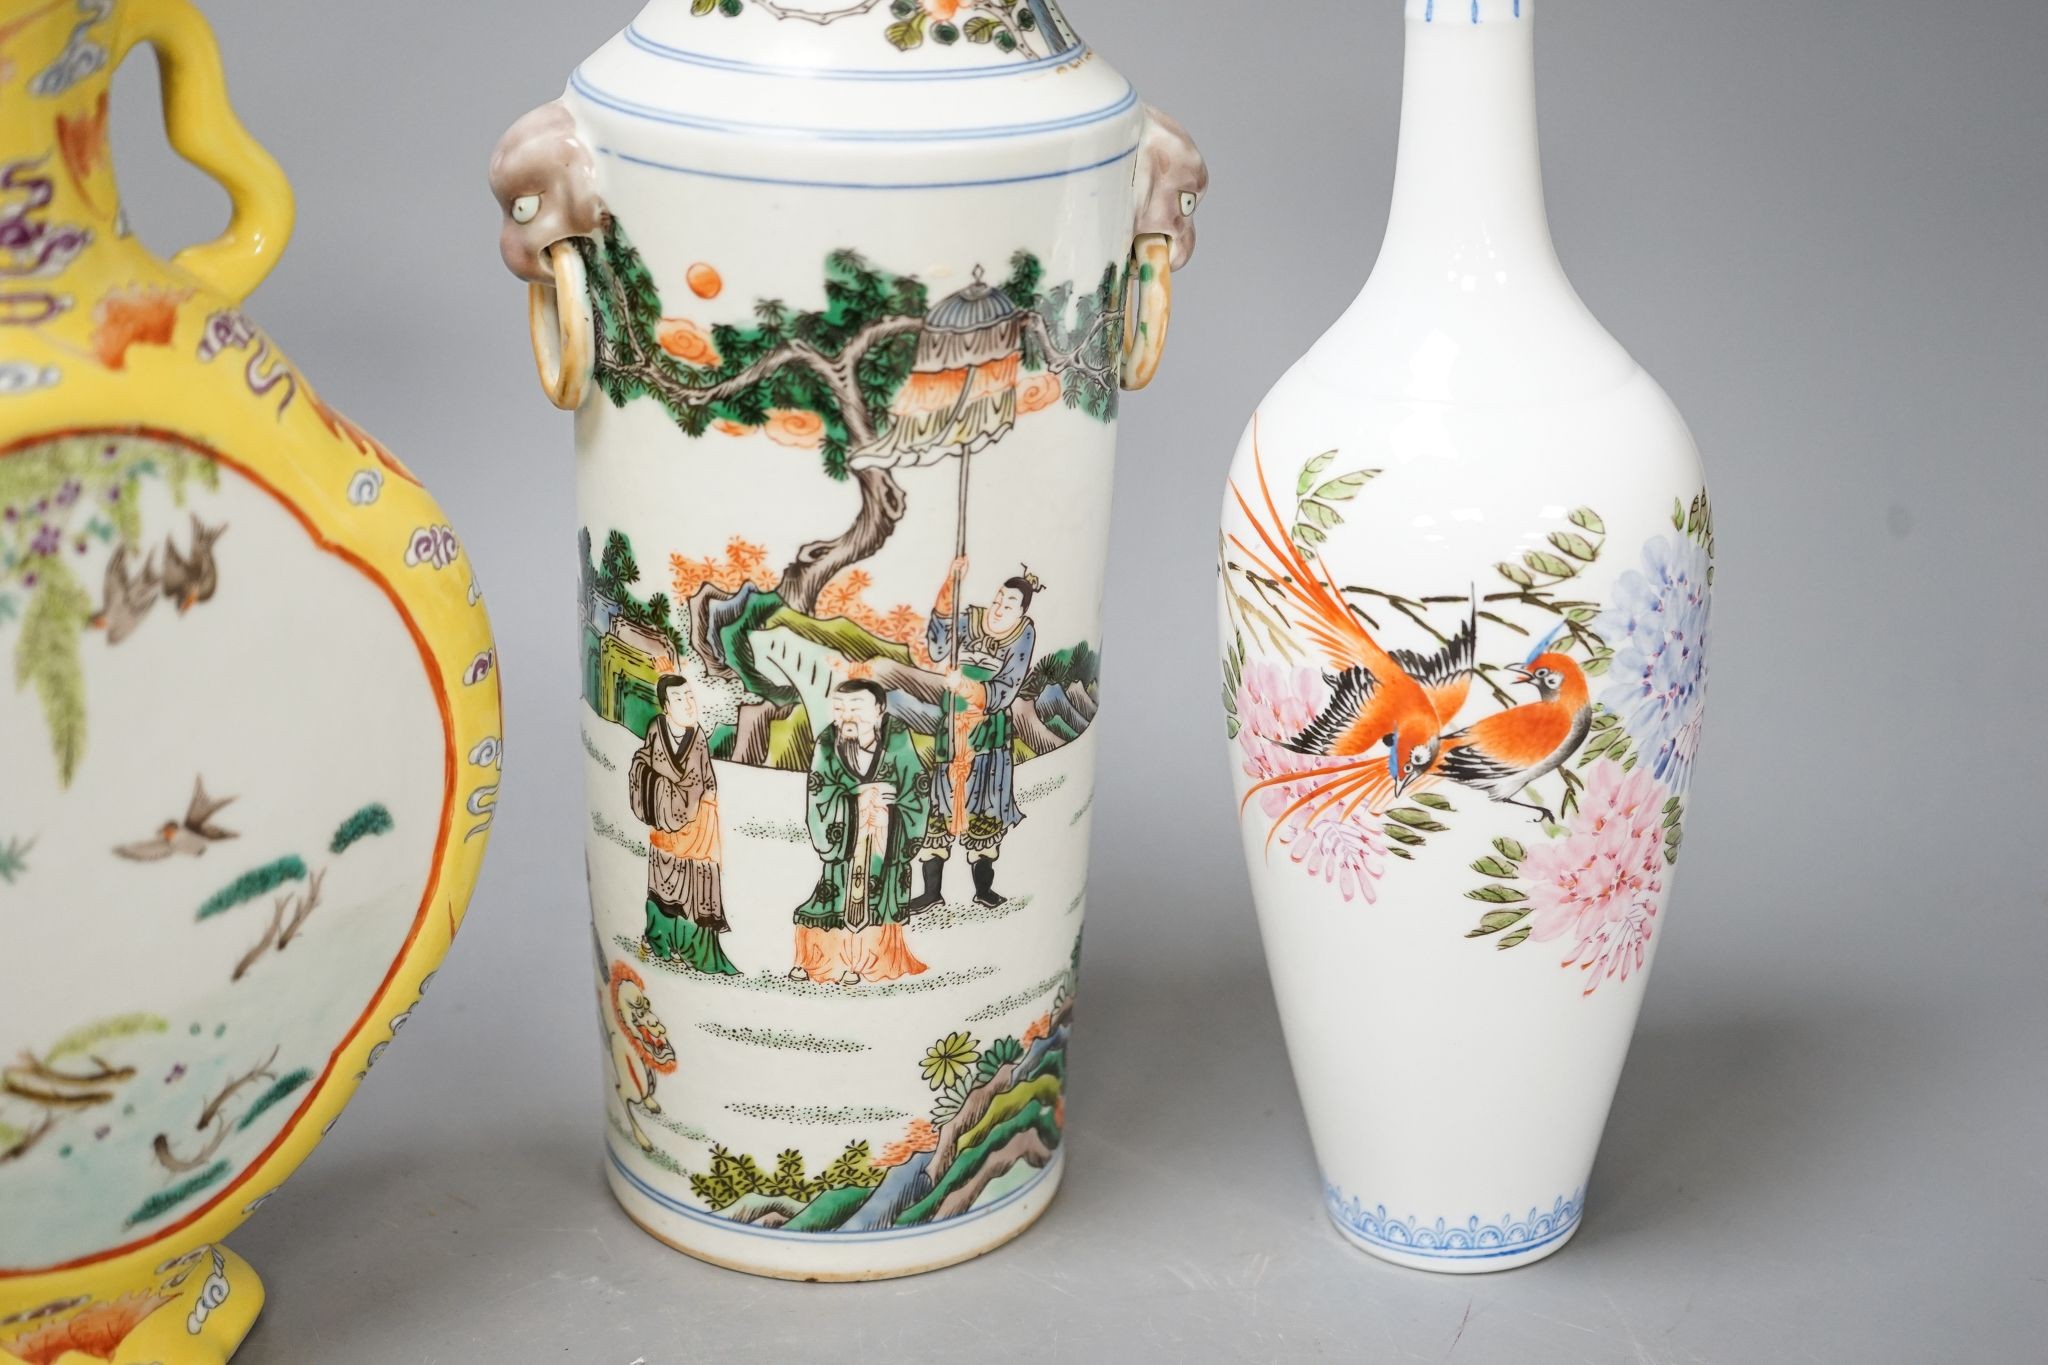 Three Chinese porcelain vases, tallest 26cm